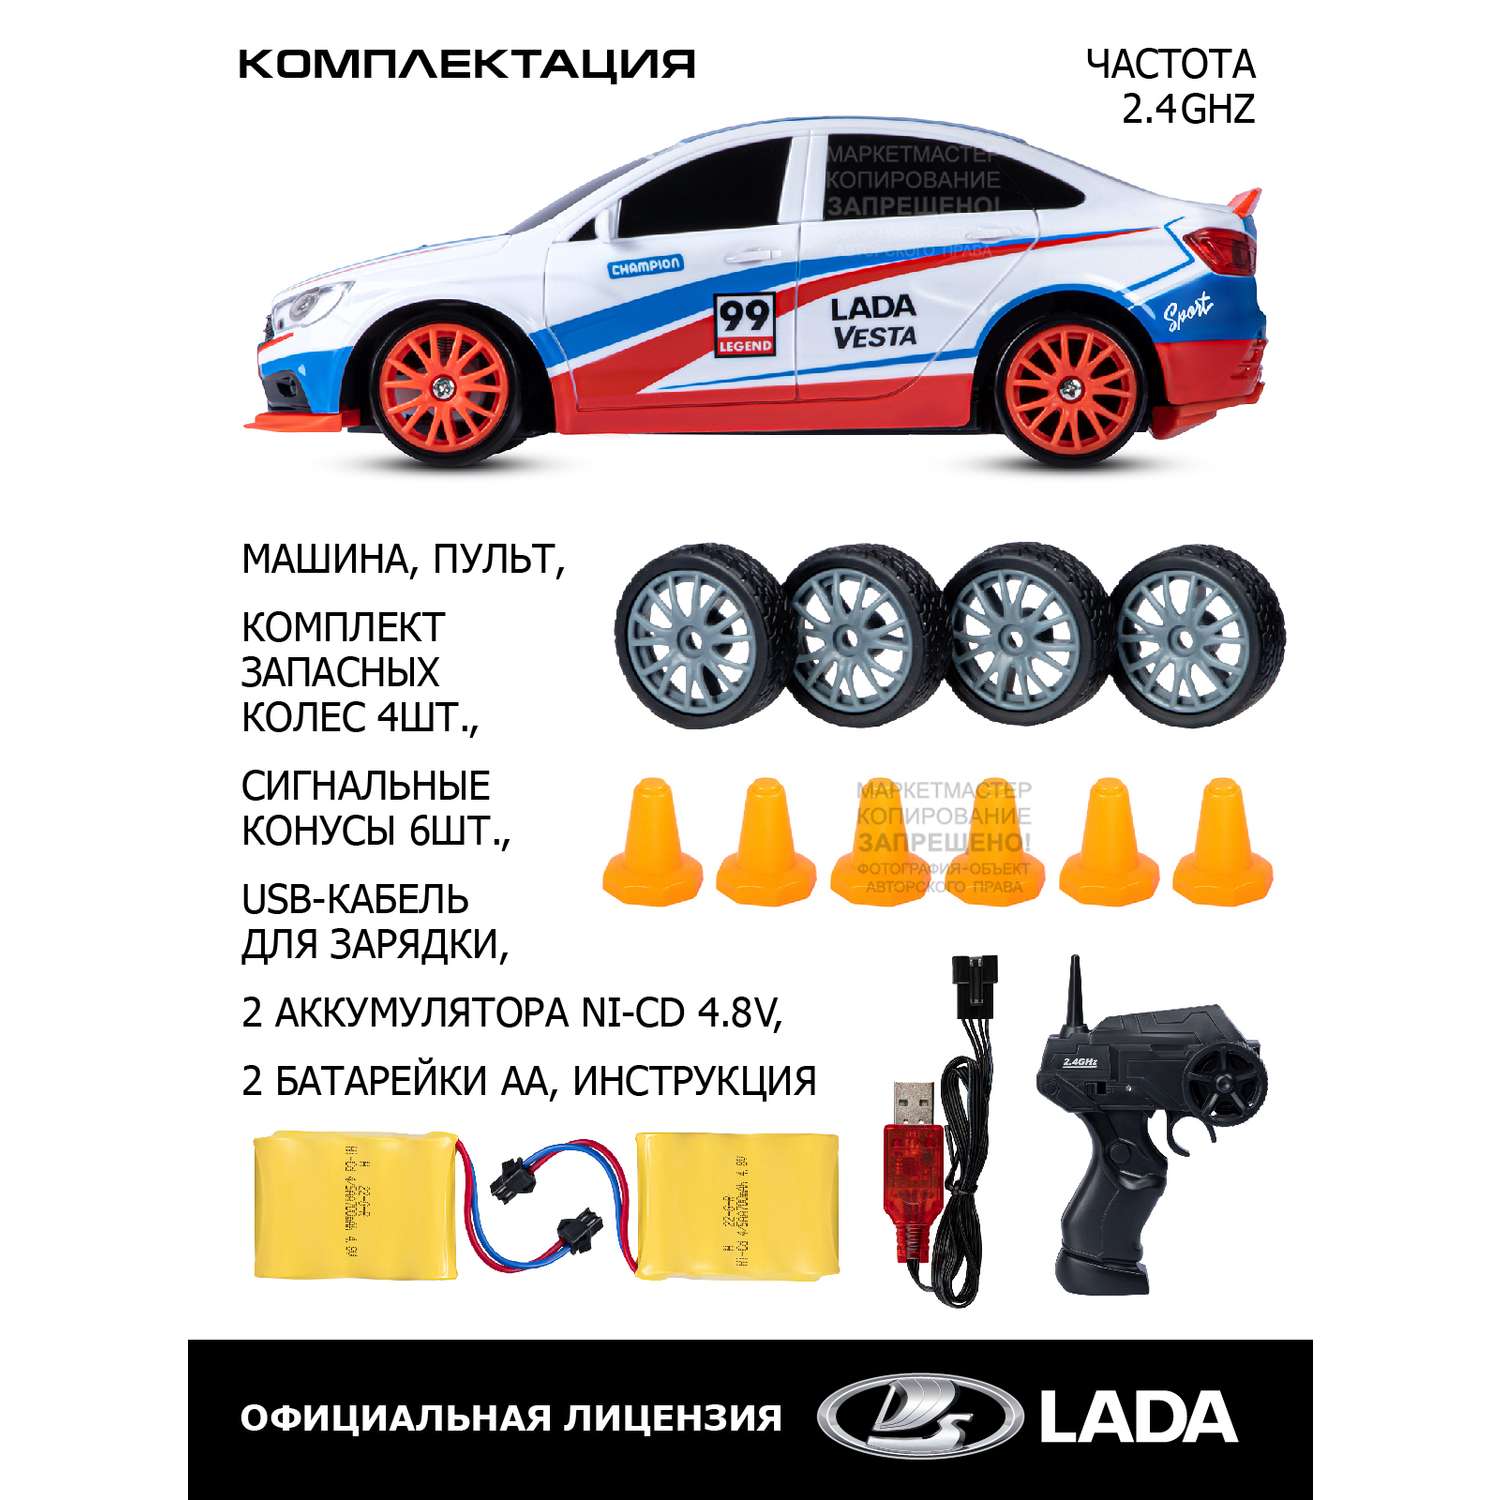 Игрушка на радиоуправлении AUTODRIVE для дрифта Lada Vesta М 1:24 с пультом и запасными колесами 2.4GHz - фото 3